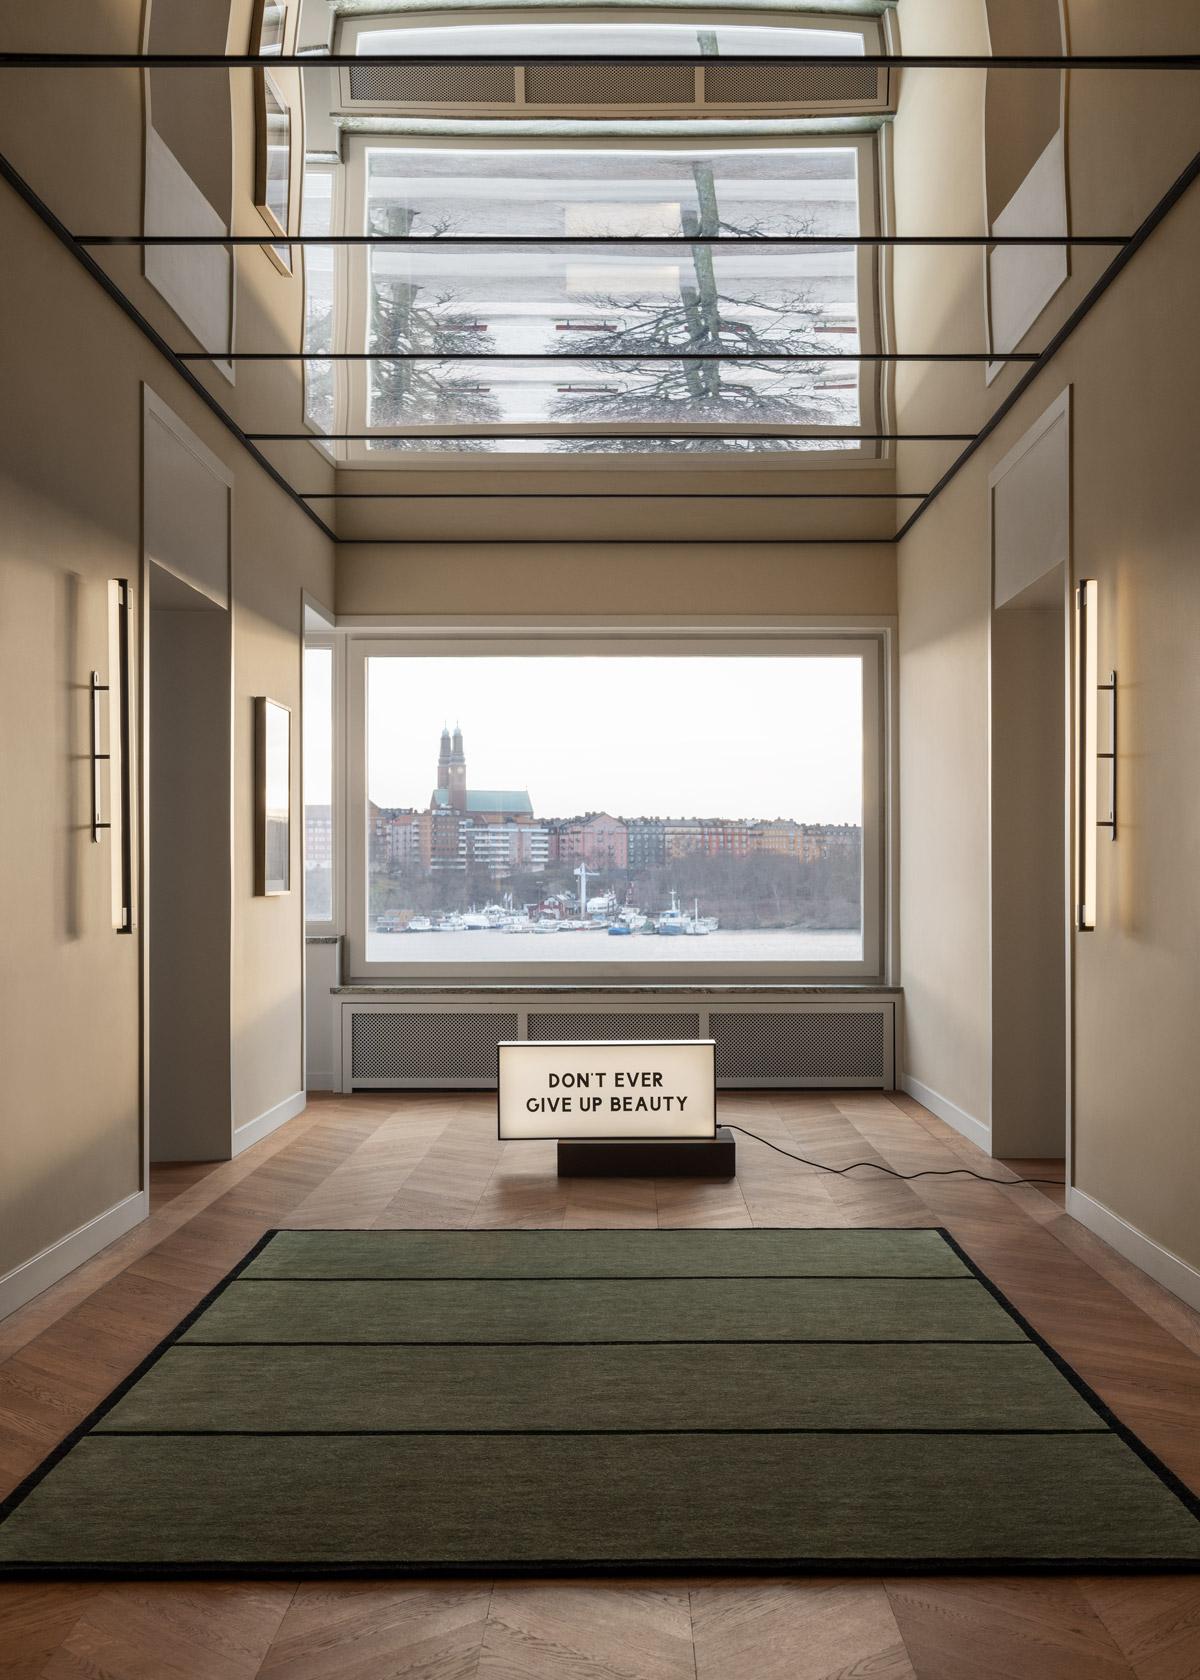 Conçu par l'architecte suédois Andreas Martin-Löf pour son espace de vie et de travail à Norr Mälarstrand, Stockholm. Inspiré par l'esthétique typique du « Norr Mälarstrand » où l'architecture se situe à la frontière du classicisme et du modernisme.